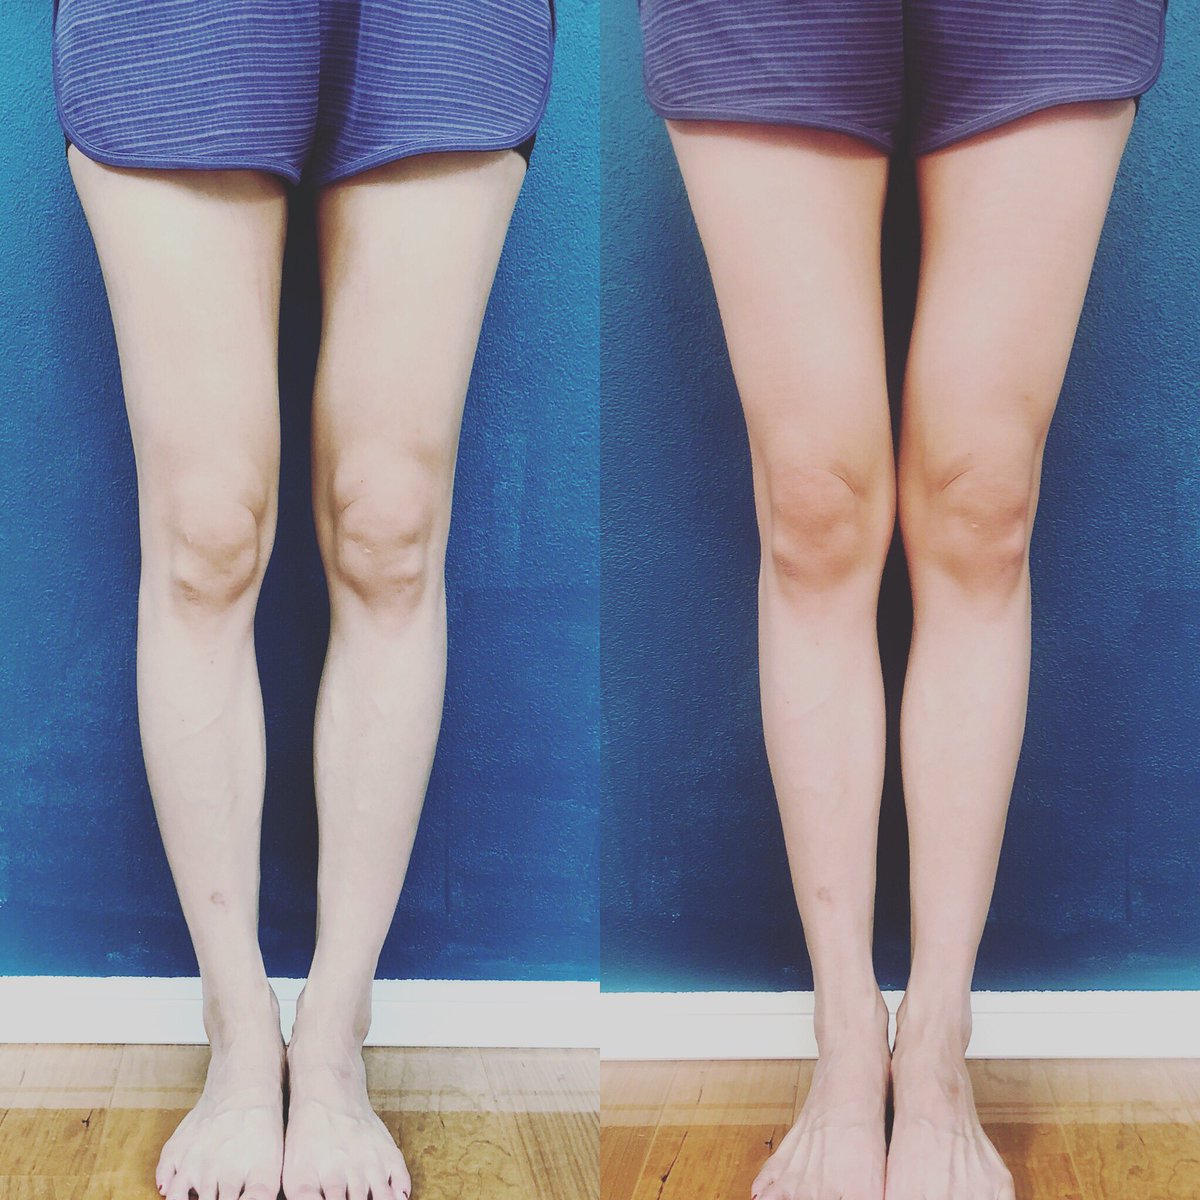 いのトレ Qpu ダイエット 美容垢 O脚改善するとこれだけ見た目が変わる 脚が真っ直ぐになると細く 長く見えるんだよね ワンセッションでの変化なので体重は一切変わっていません